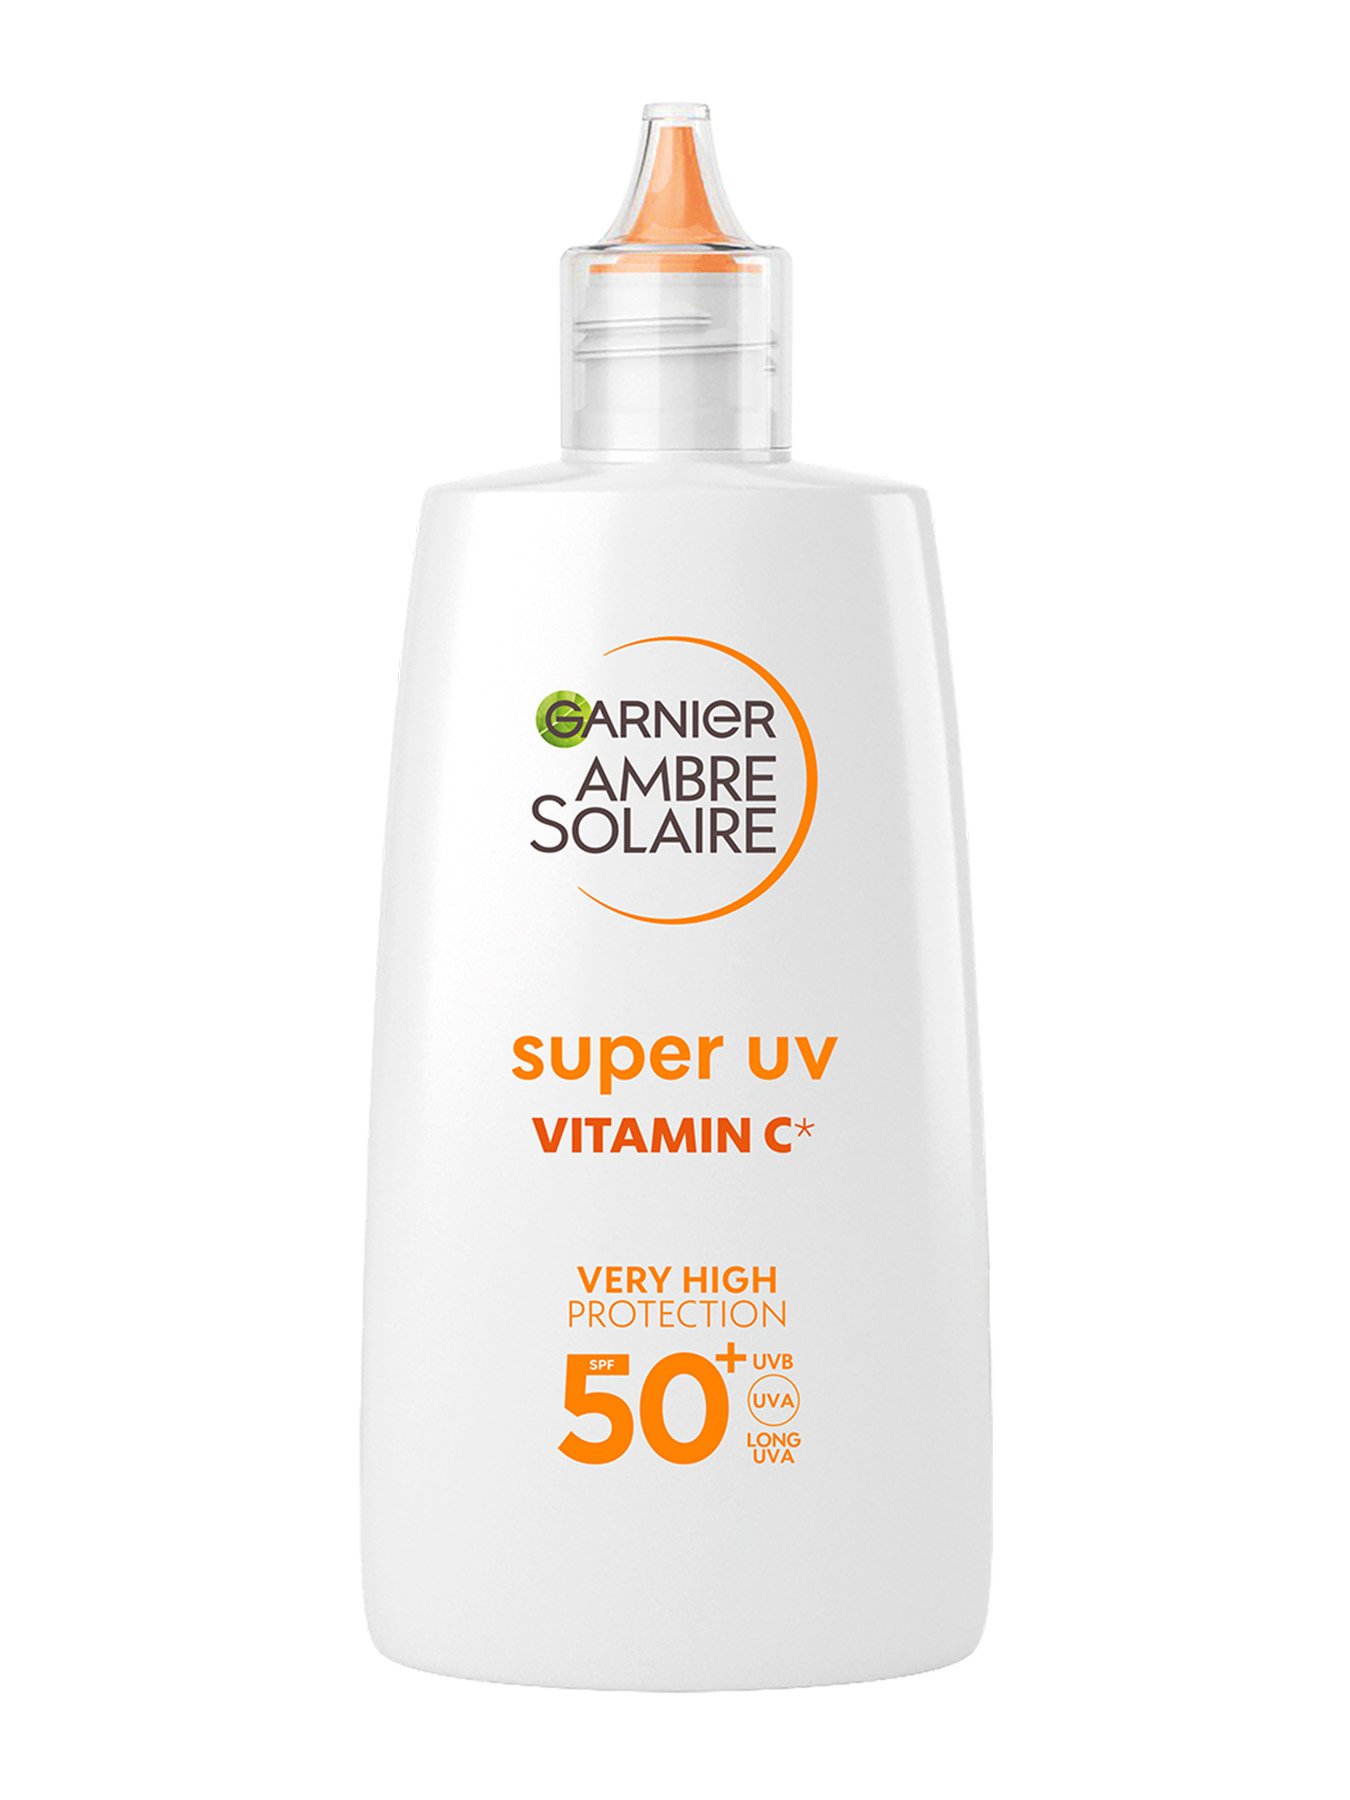 Garnier Ambre Solaire dnevni fluid protiv tamnih fleka sa vitaminom C* i sa veoma visokom zaštitom SPF 50+